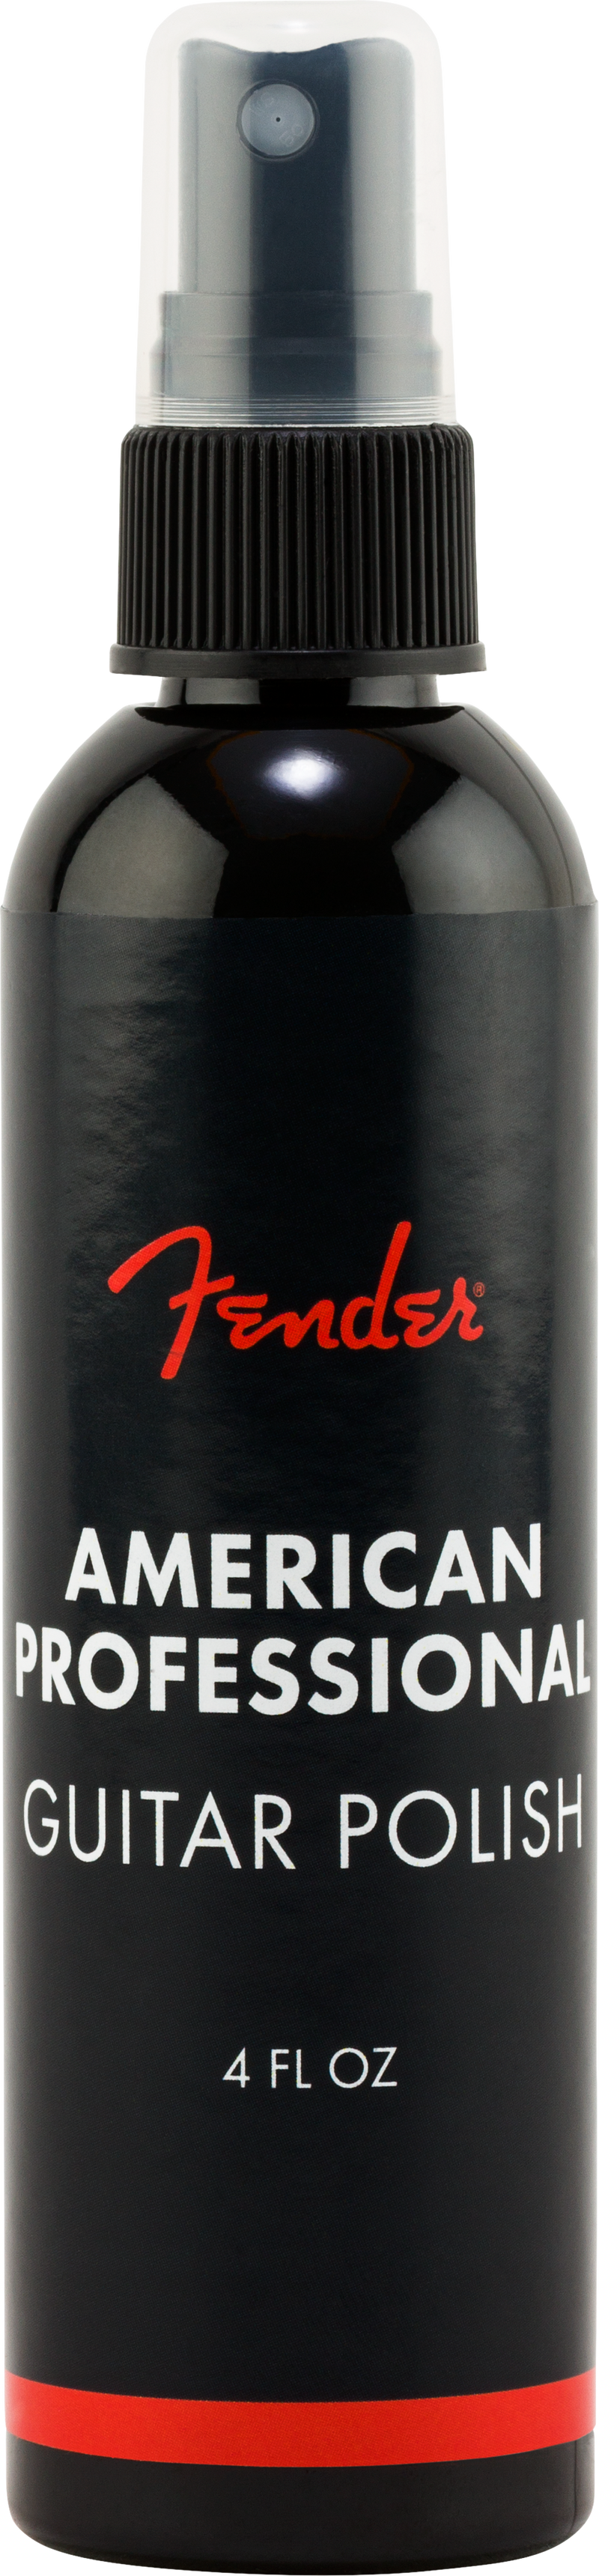 Fender American Professional Guitar Polish 4oz Spray